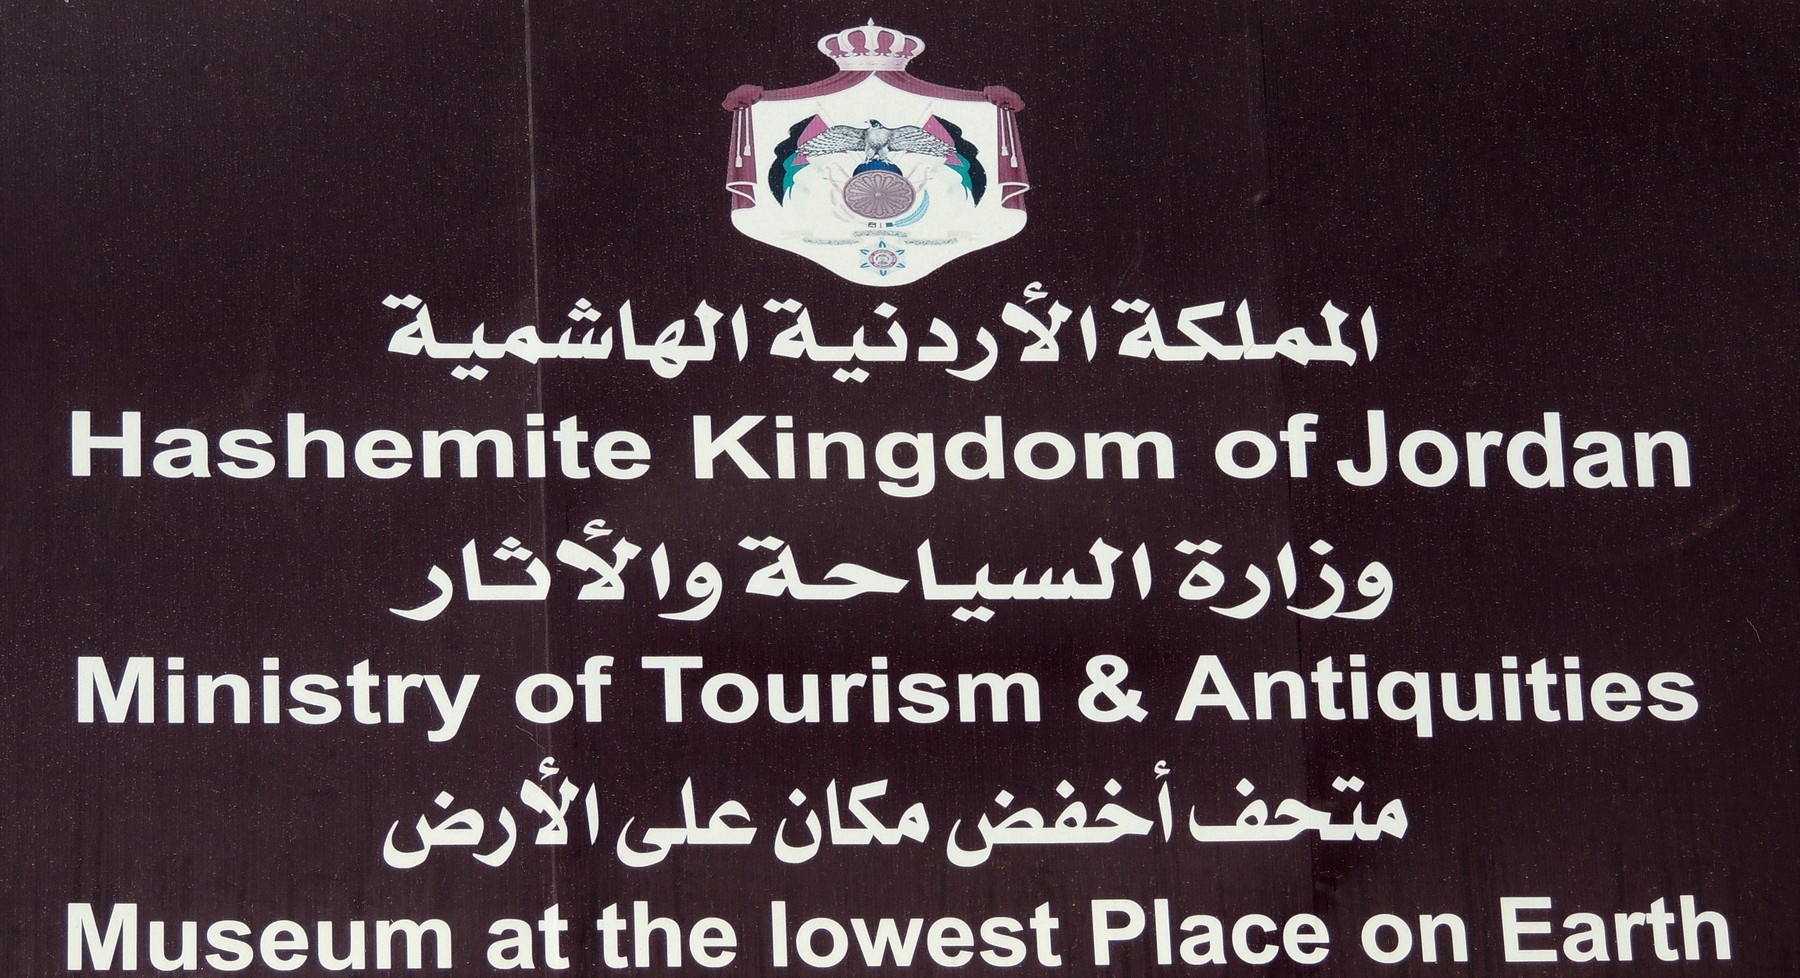 Der tiefste Punkt der Erde in Jordanien